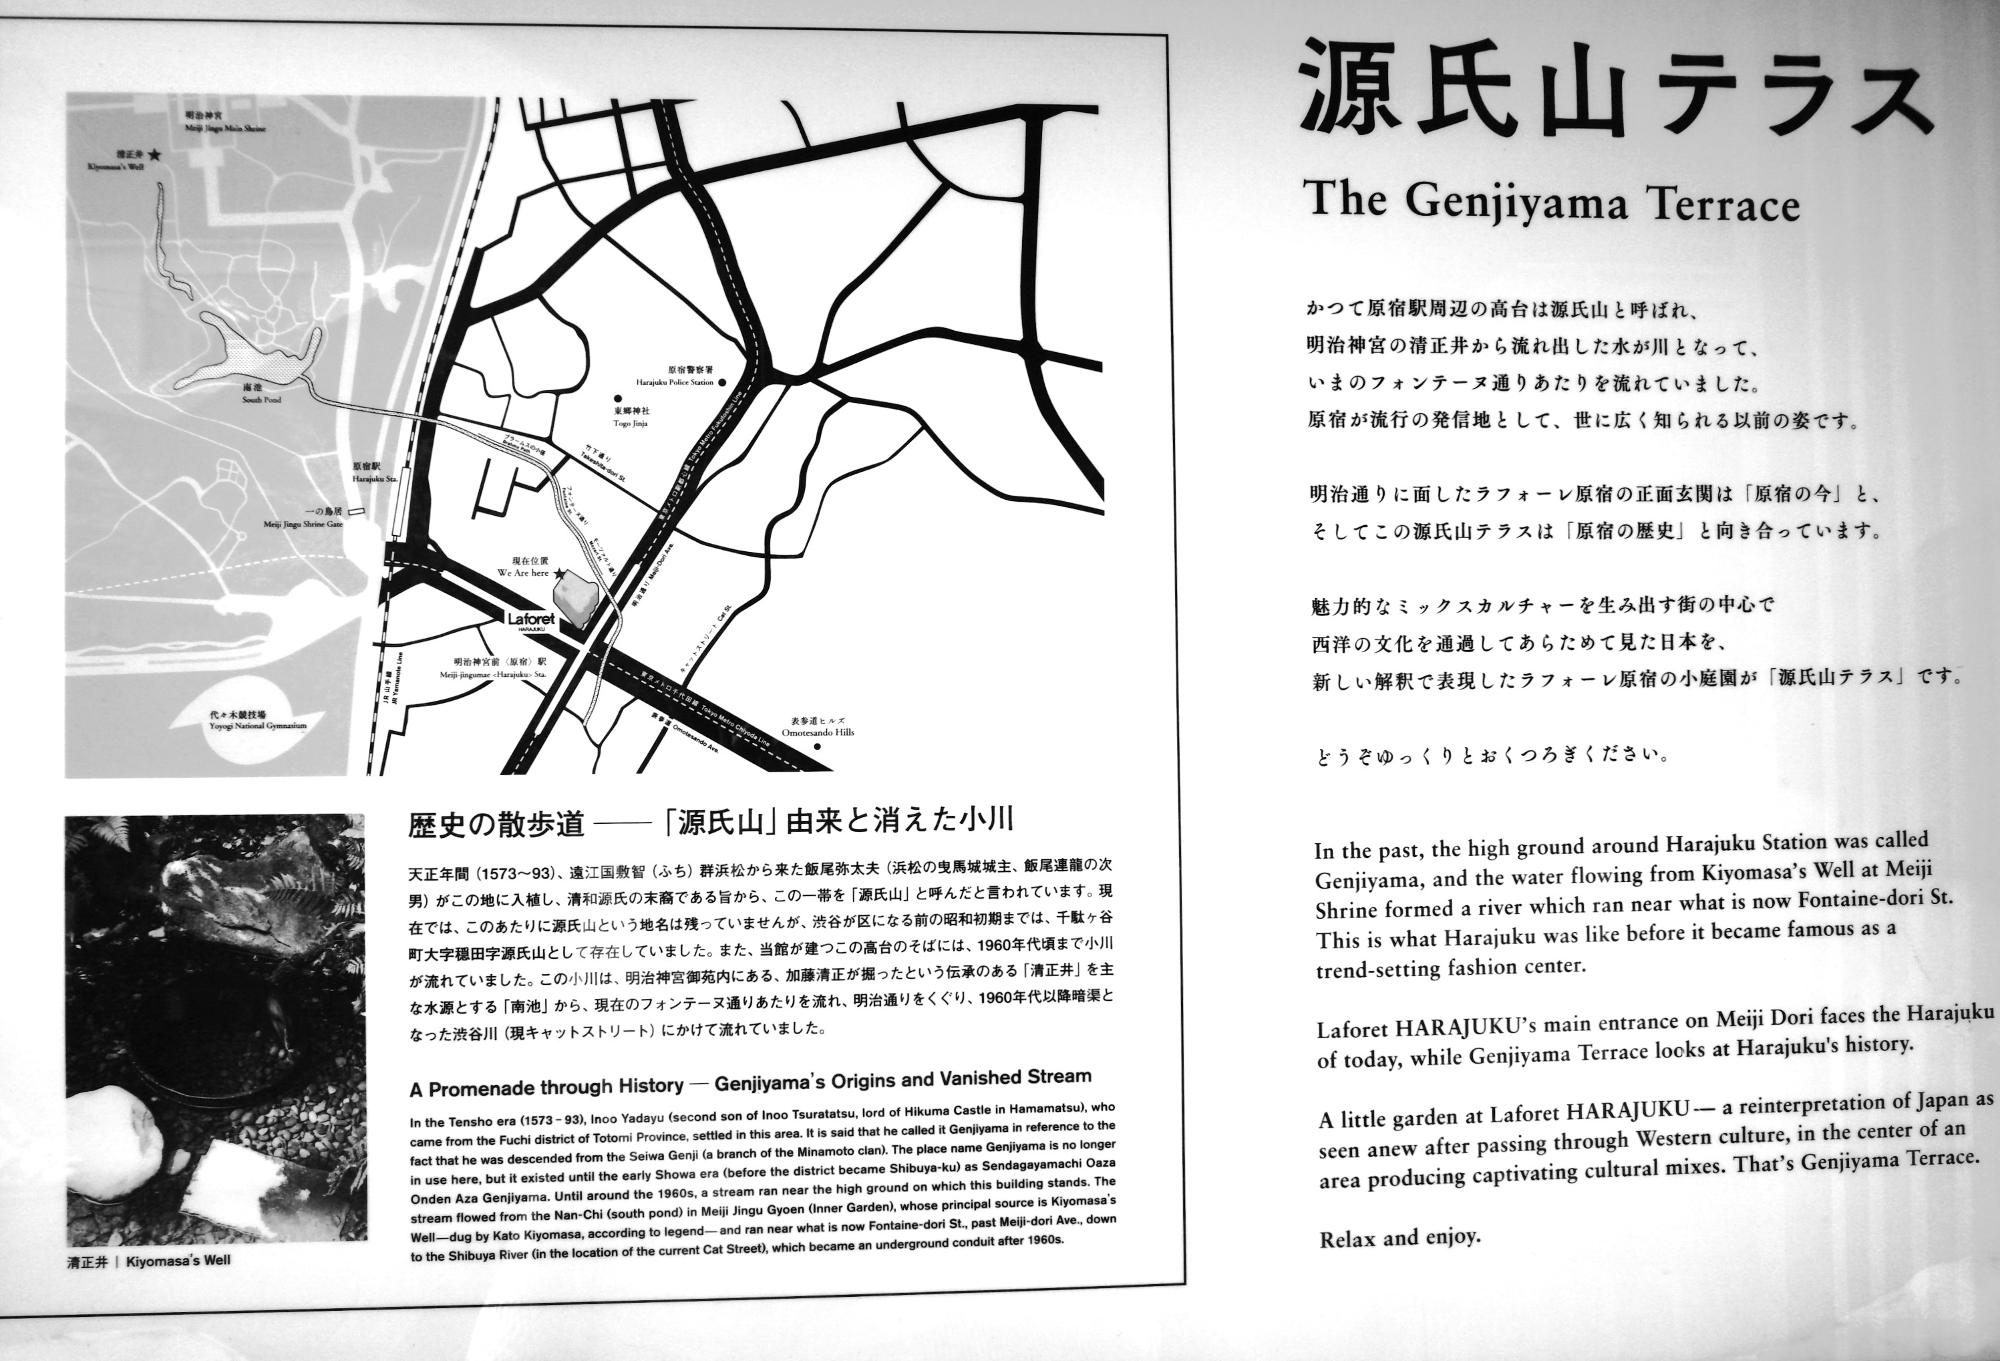 ラフォーレ原宿の裏側の入口に源氏山テラスについての説明が。